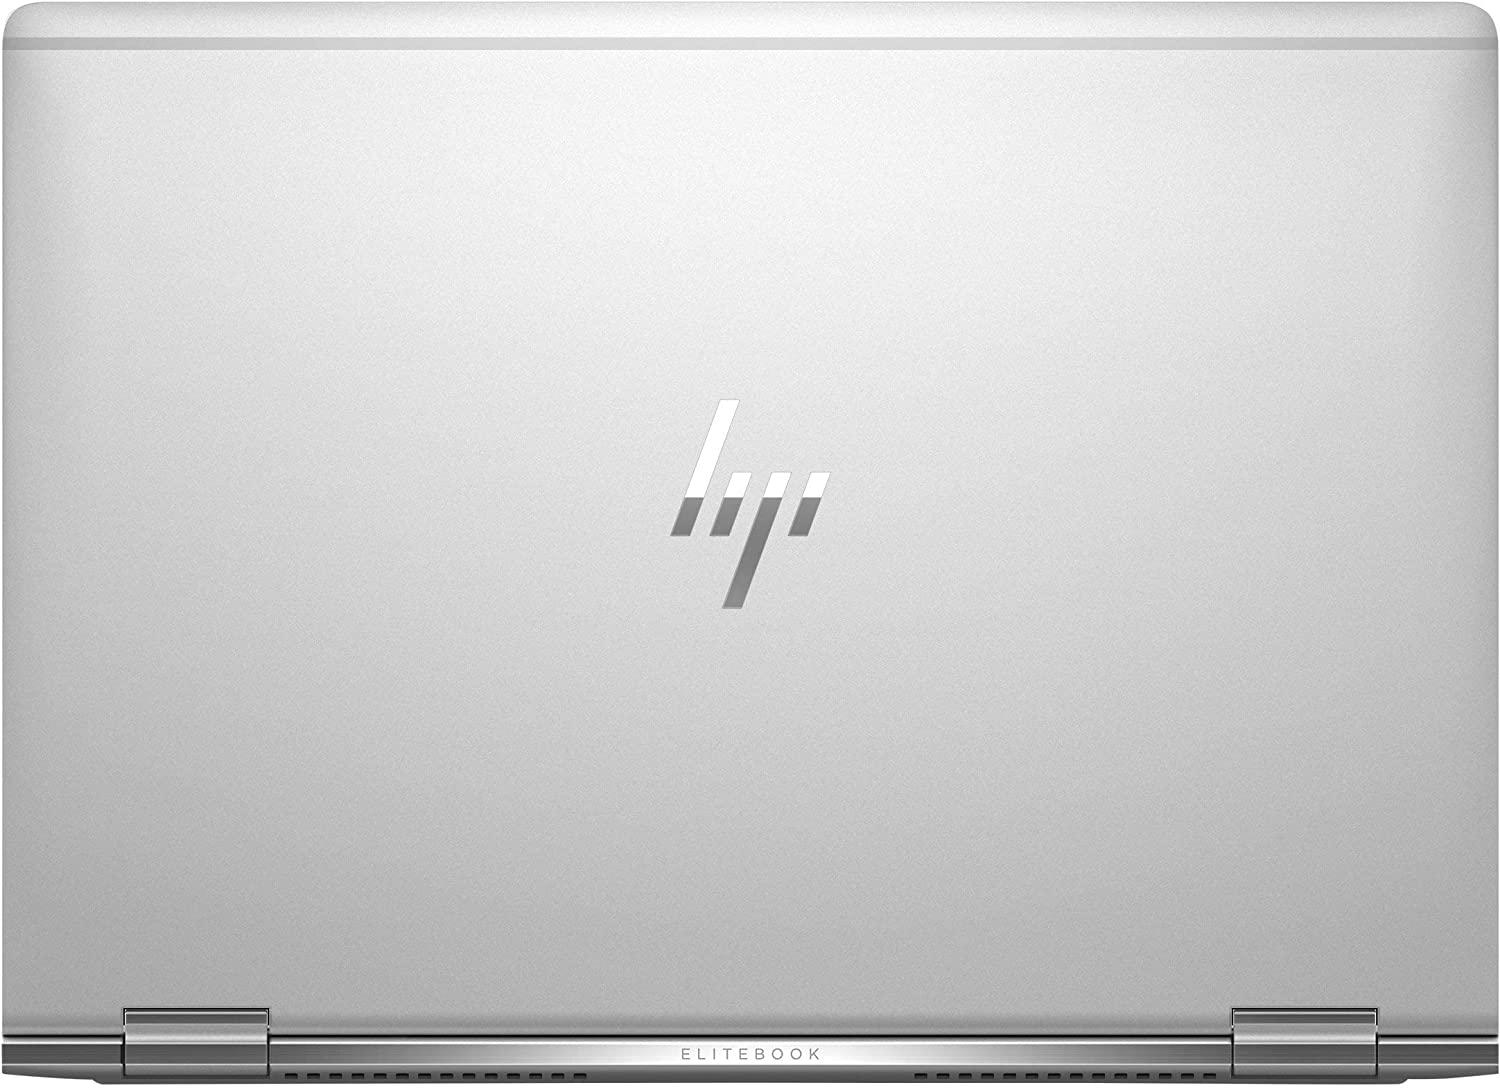 Refurbished HP EliteBook x360 1030 G2 - 13.3" (Intel Core i7 7600U/16 GB RAM/512 GB SSD/Windows 10)